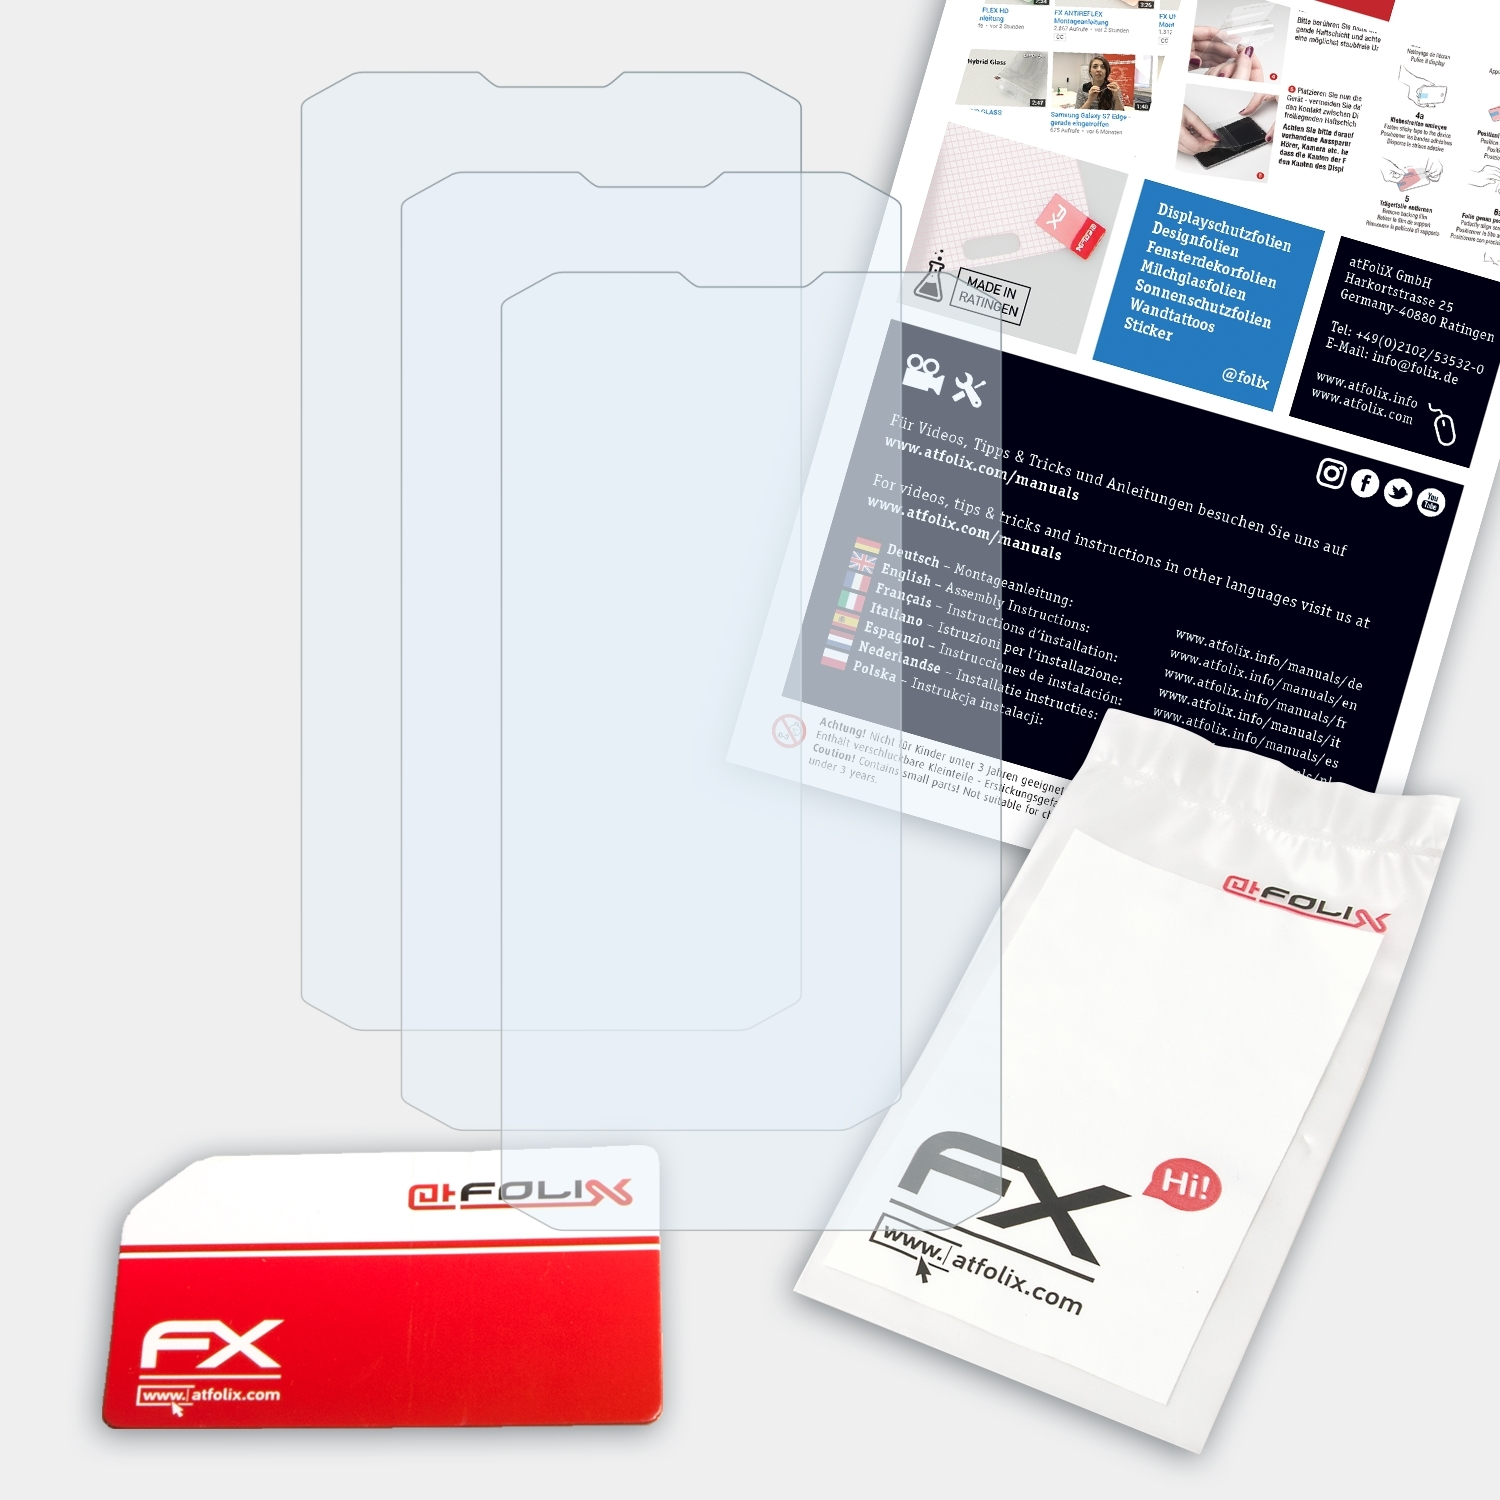 ATFOLIX 3x FX-Clear Simvalley-Mobile Displayschutz(für SPT-210)